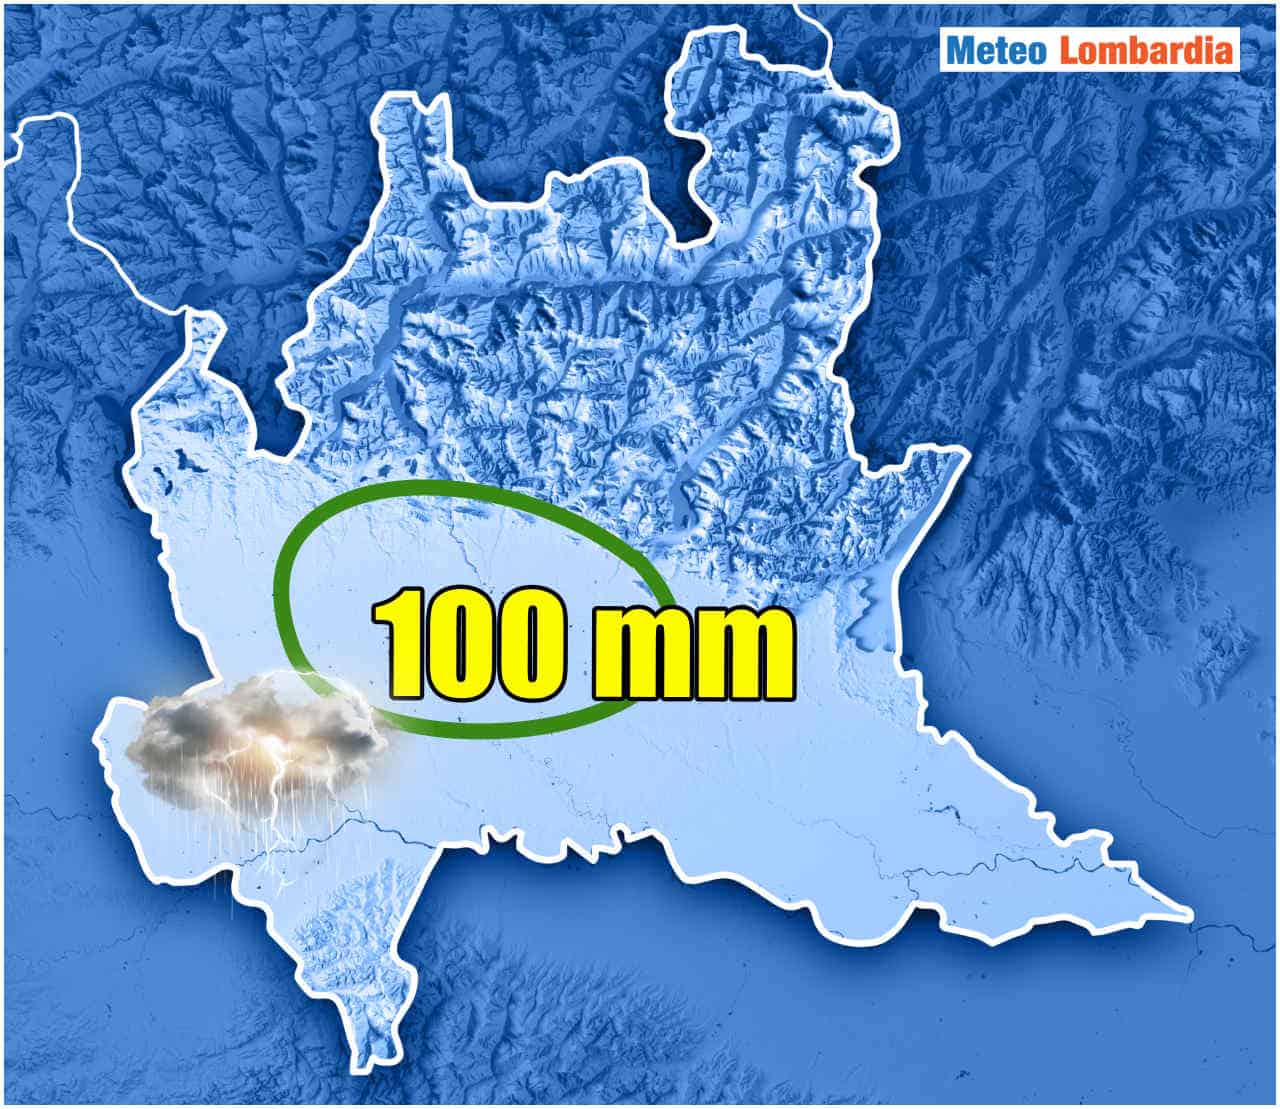 nubifragi in lombardia - Lombardia terra di nubifragi: eccesso di pioggia in varie località della regione